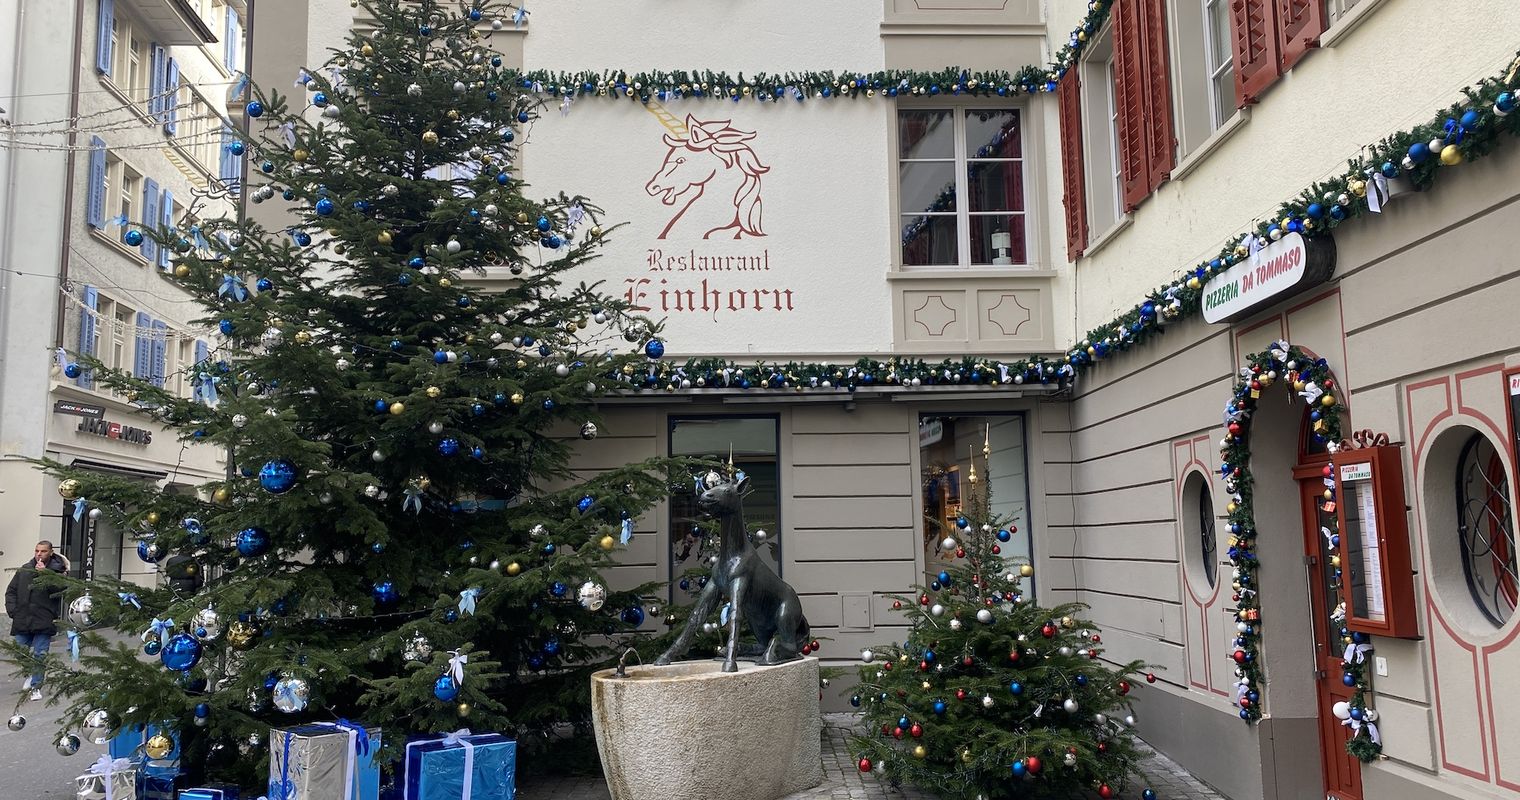 Stiftung verwandelt Restaurant Einhorn in Winterwunderland